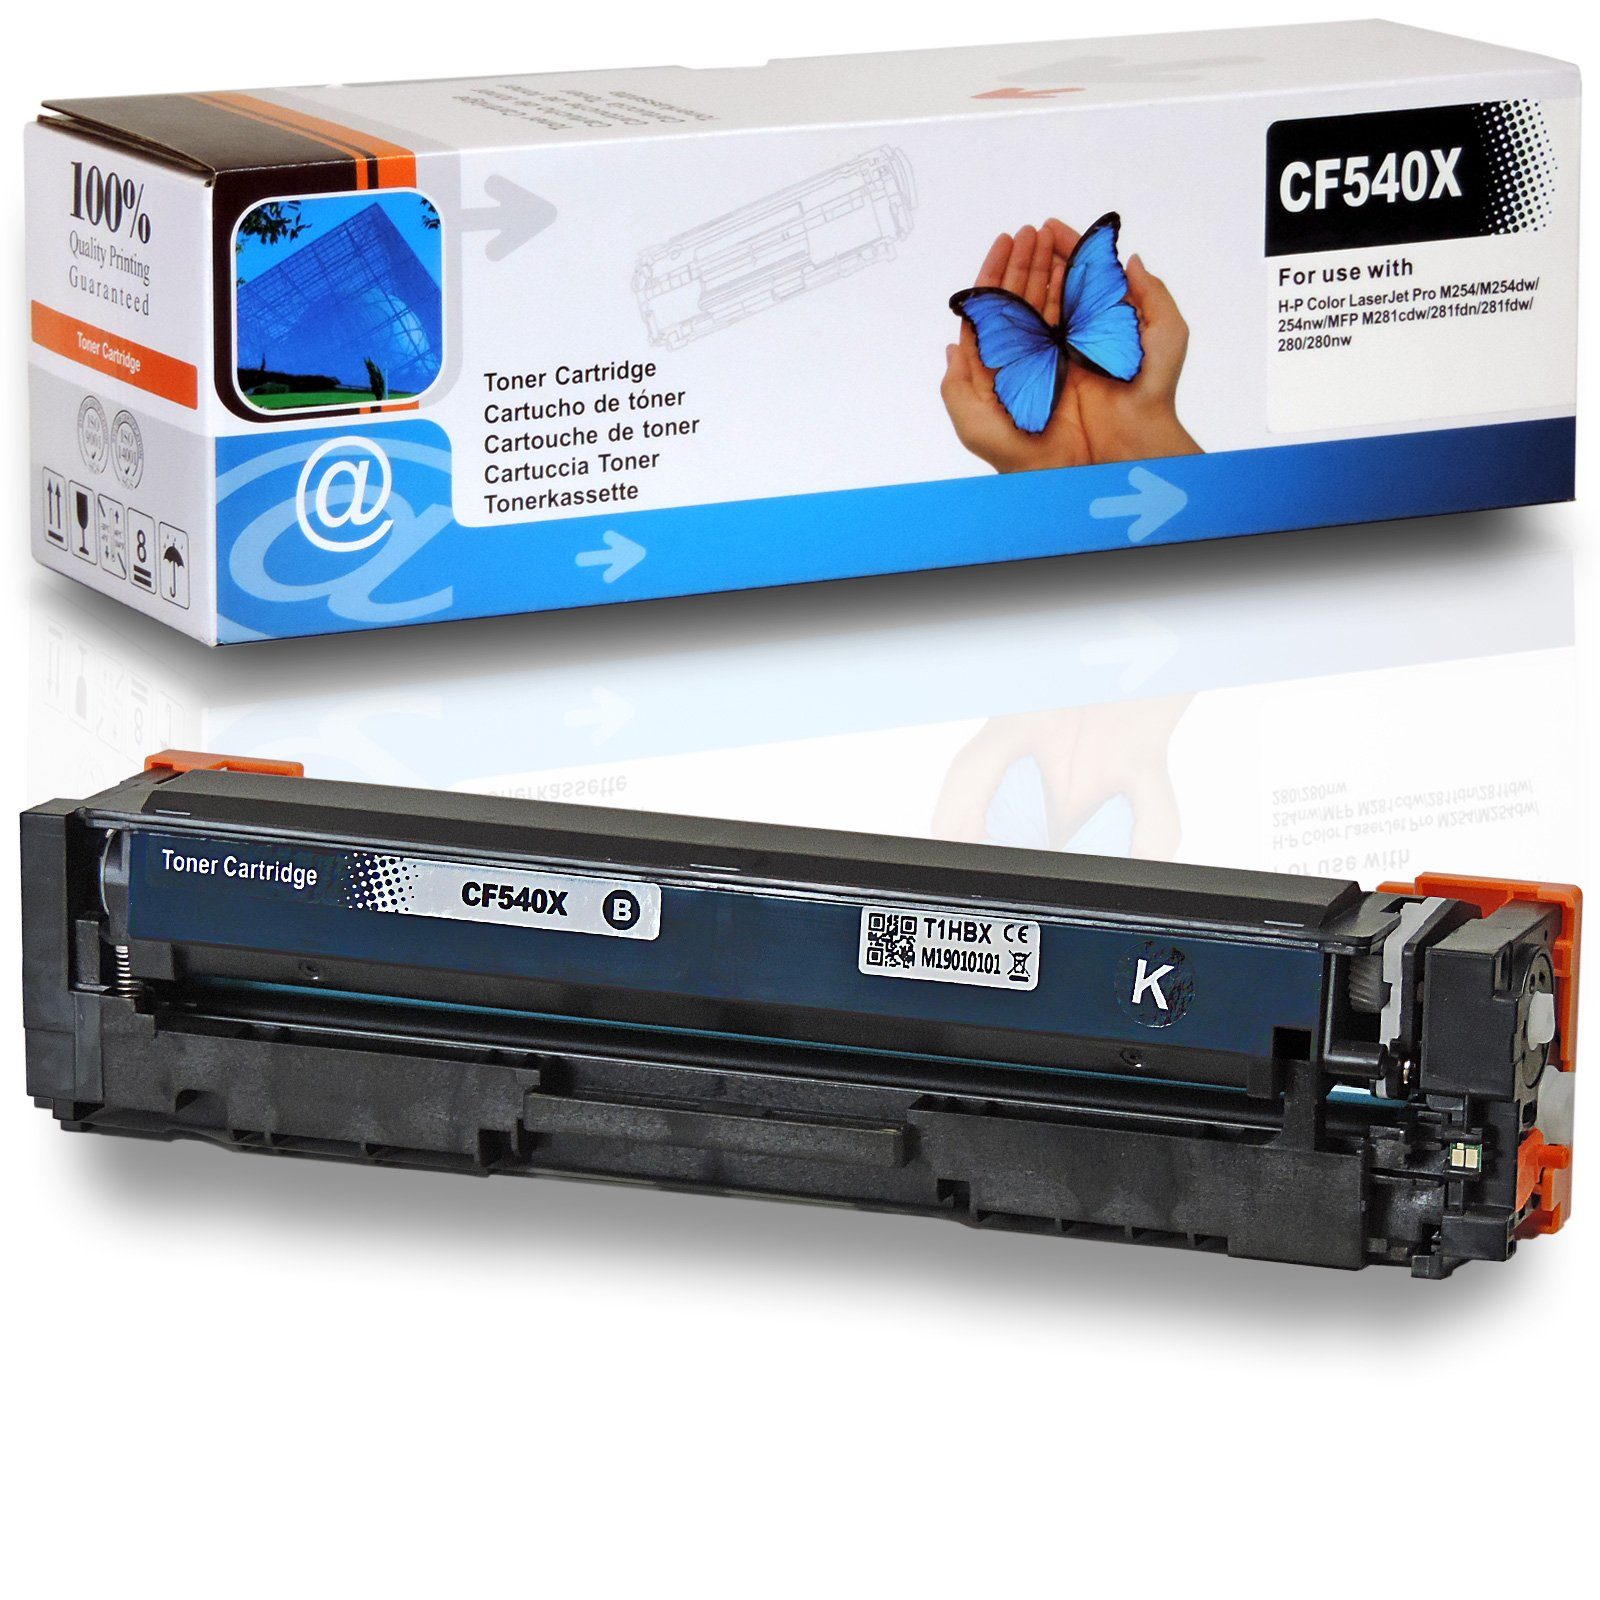 D&C Tonerkartusche Kompatibel HP 203X, CF540X Schwarz, für HP Color LaserJet Pro MFP M 280 nw und weitere